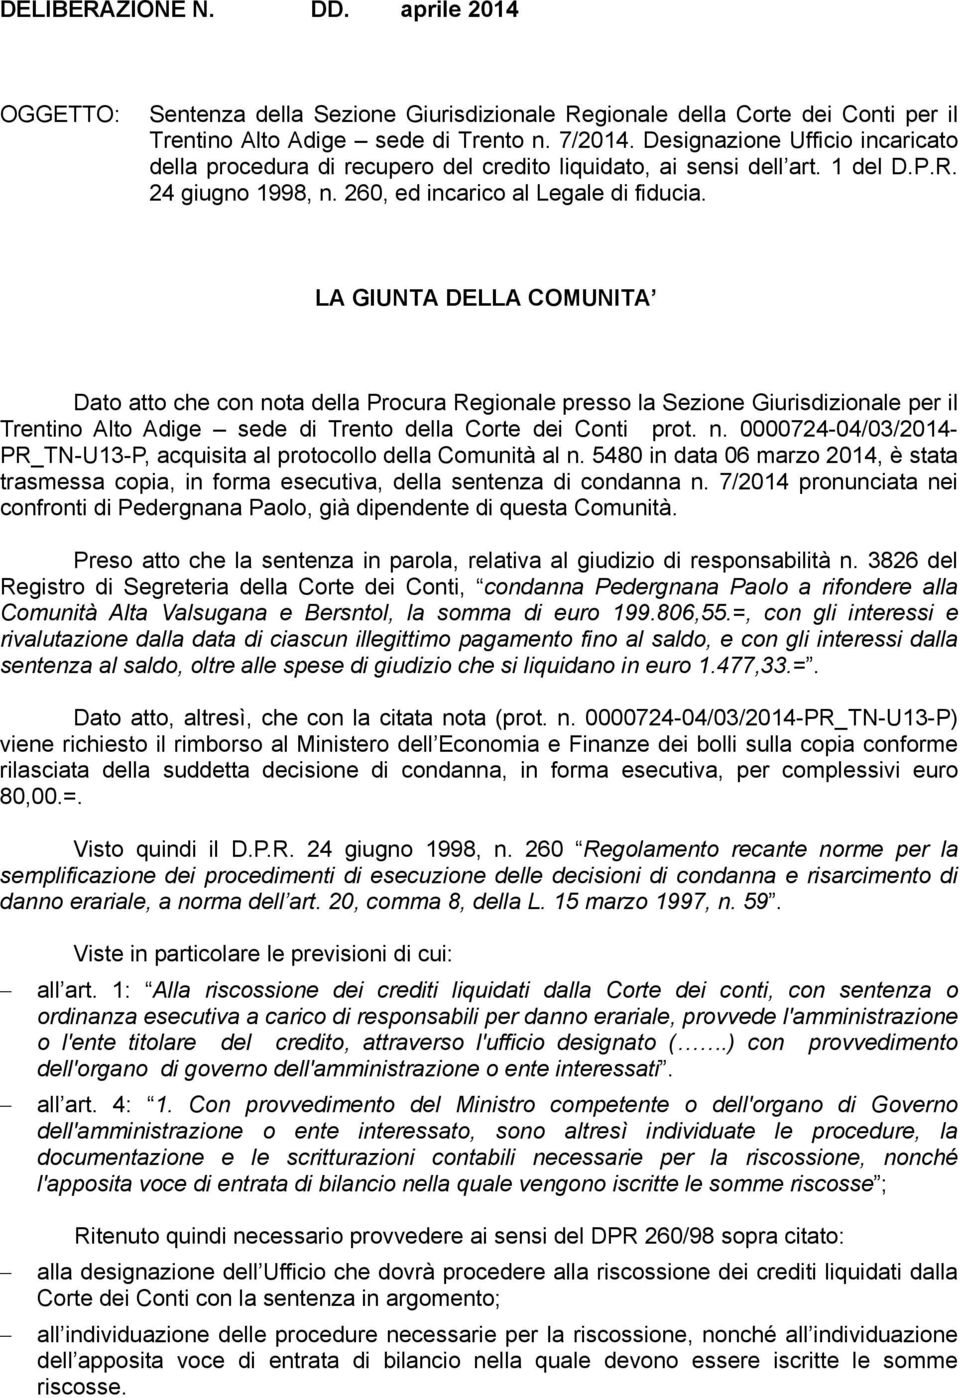 LA GIUNTA DELLA COMUNITA Dato atto che con nota della Procura Regionale presso la Sezione Giurisdizionale per il Trentino Alto Adige sede di Trento della Corte dei Conti prot. n. 0000724-04/03/2014- PR_TN-U13-P, acquisita al protocollo della Comunità al n.